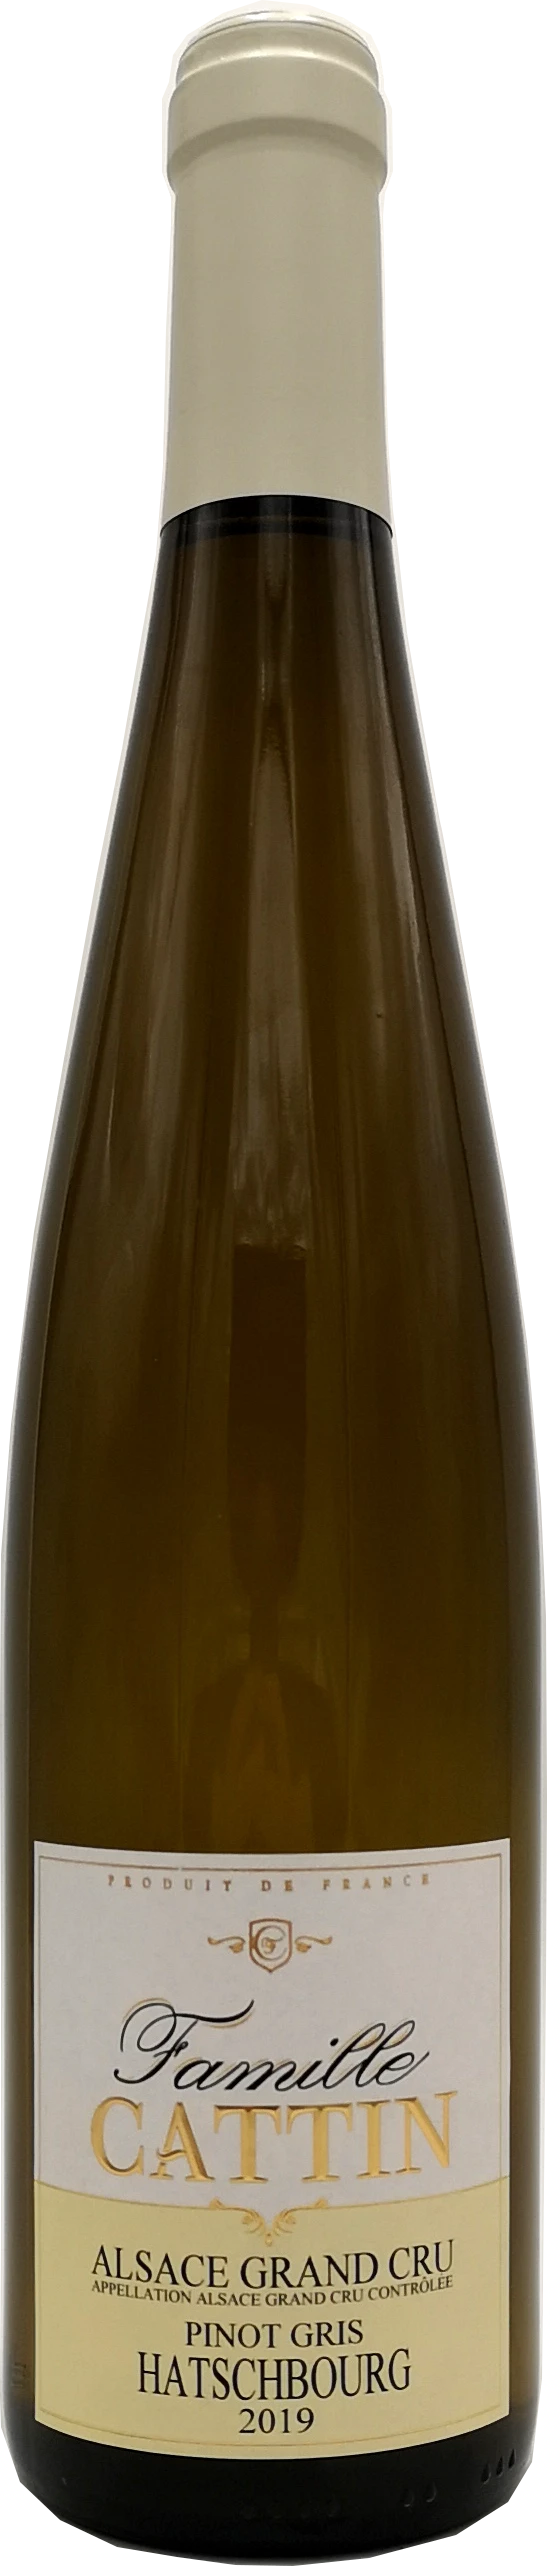 Pinot Gris Hatschbourg Bl 75cl